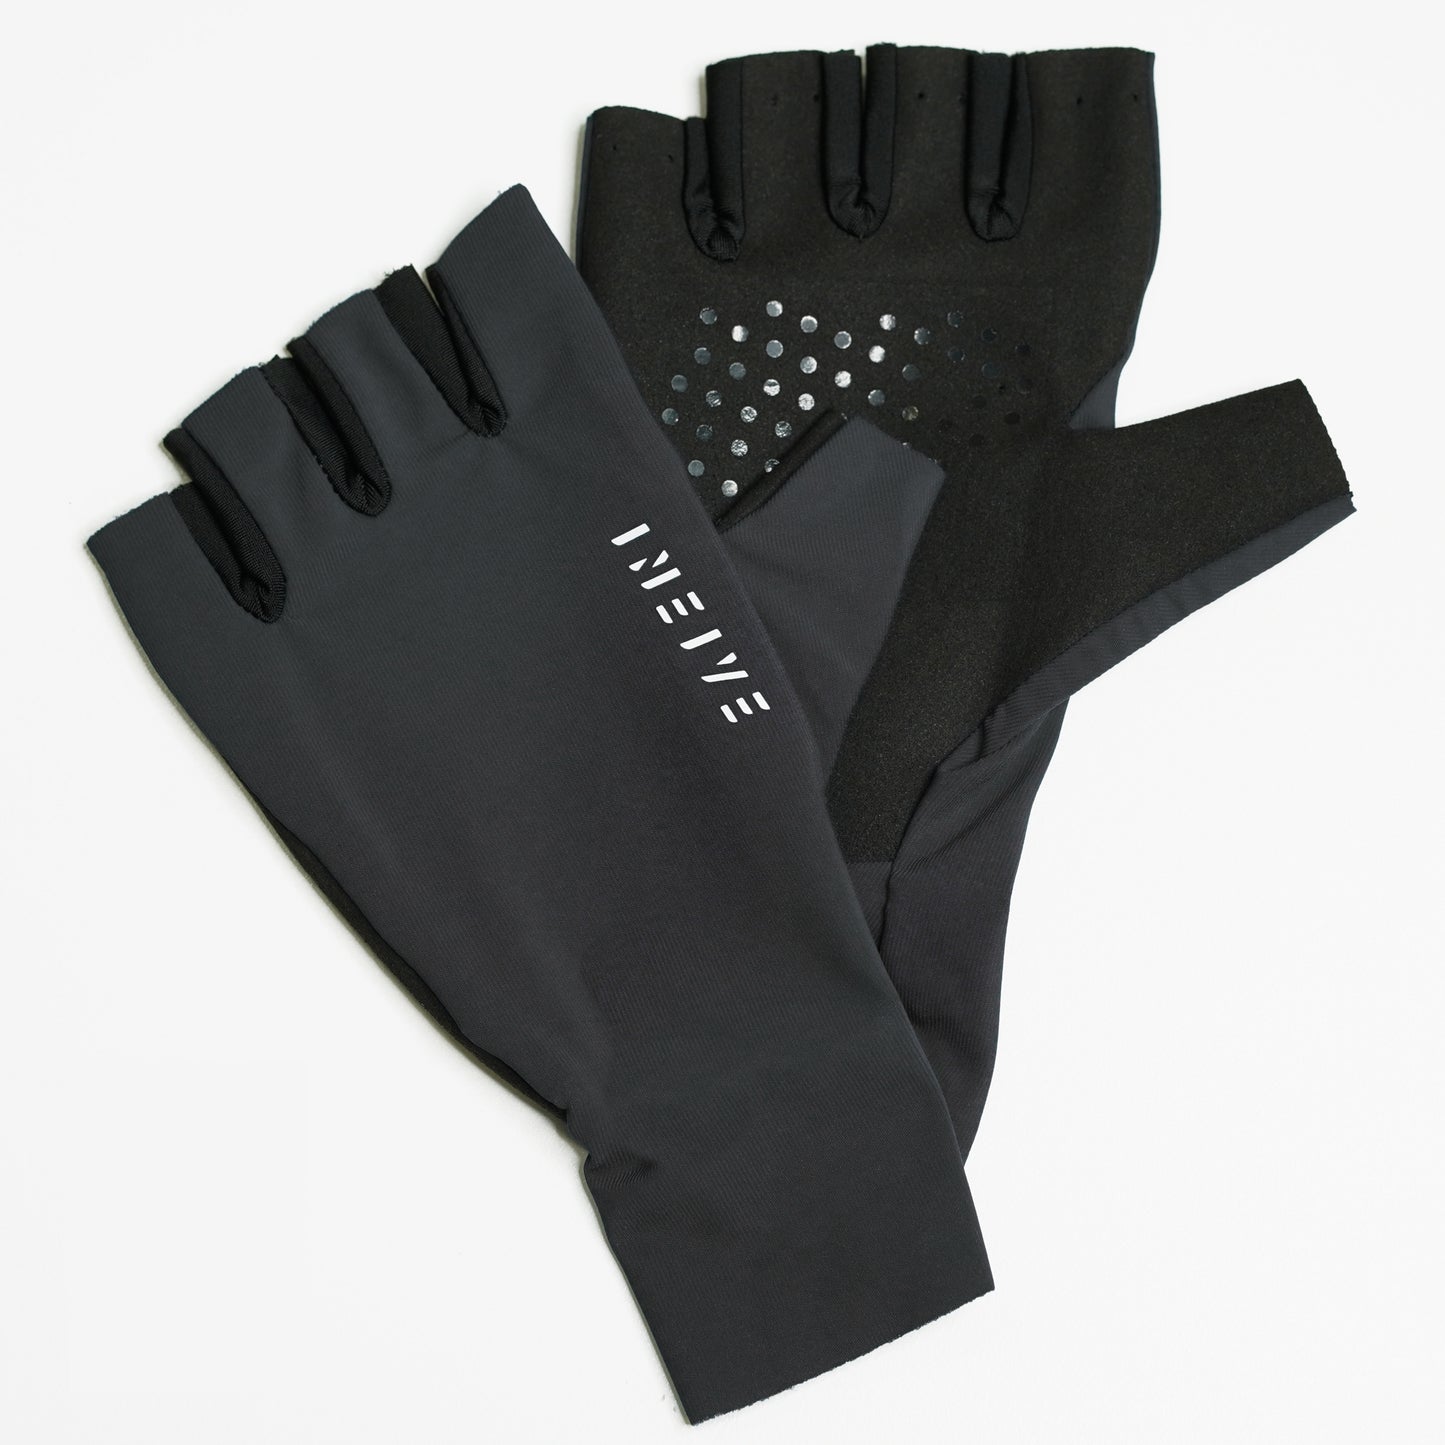 Long Cuff Gloves